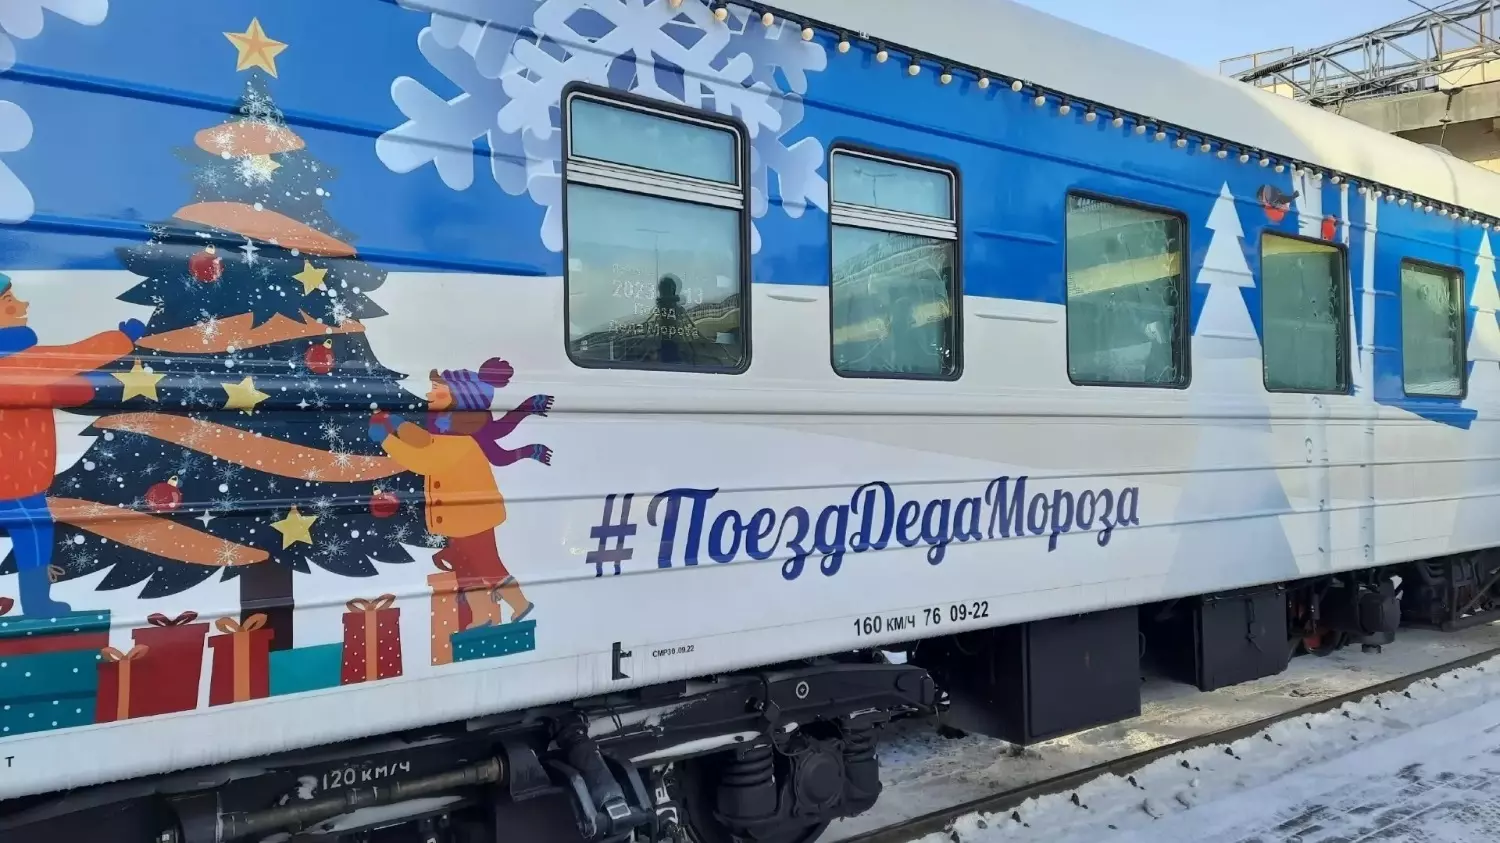 Поезд Деда Мороза в Нижегородской области